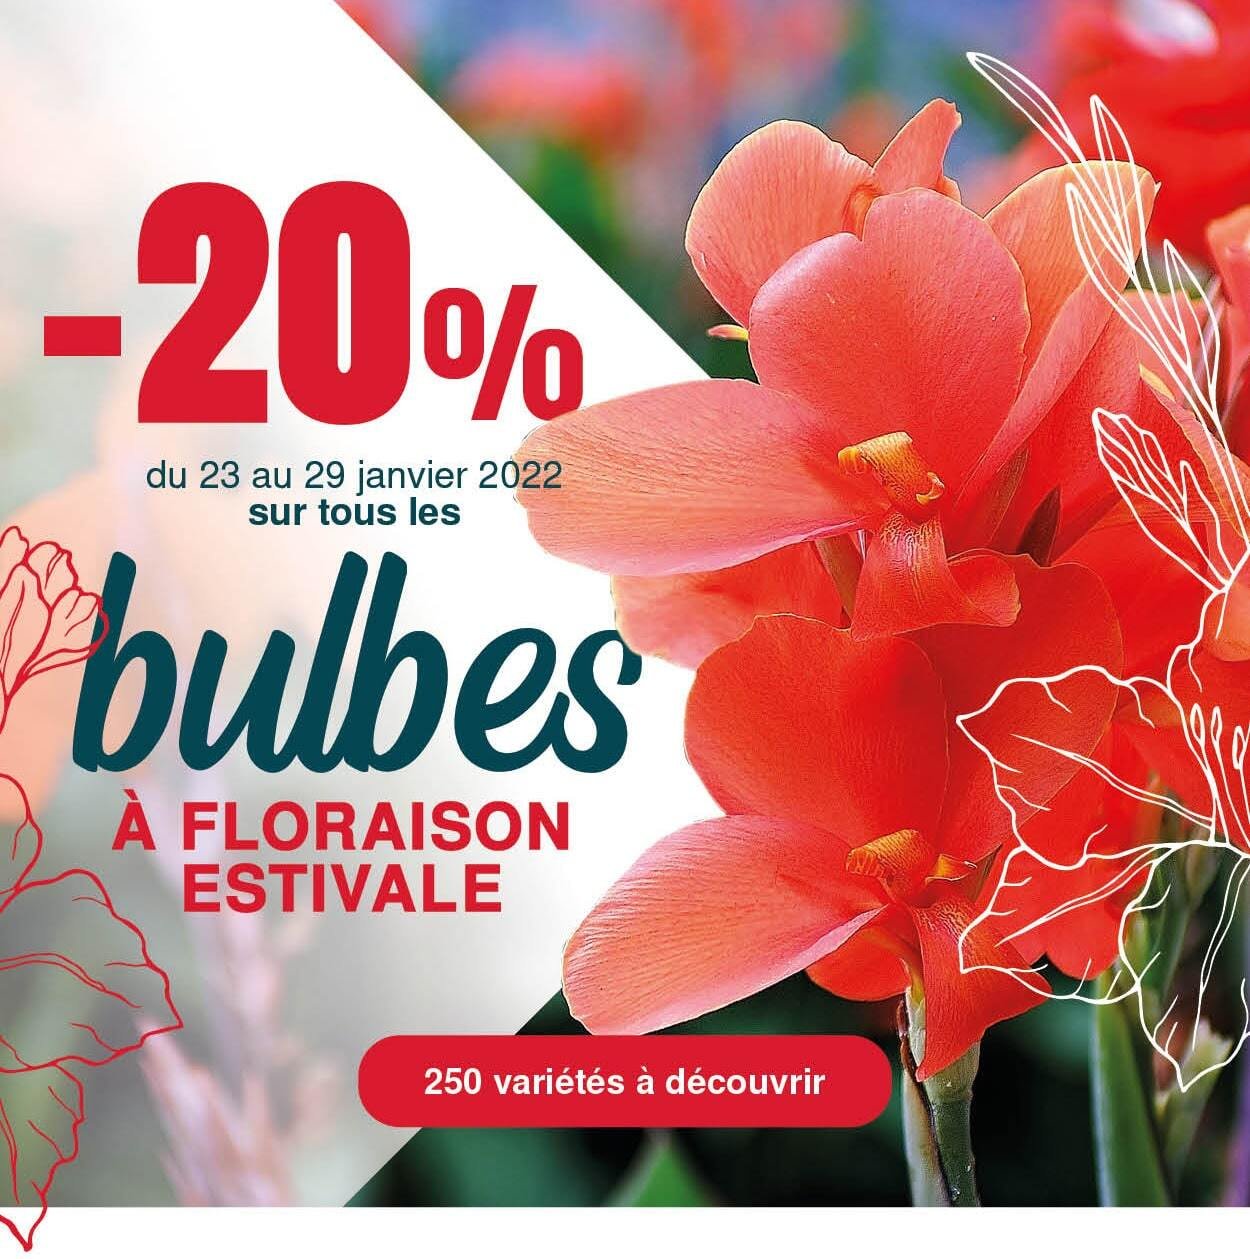 Du 23 au 29 janvier, -20% sur tous les bulbes à floraison estivale en précommande